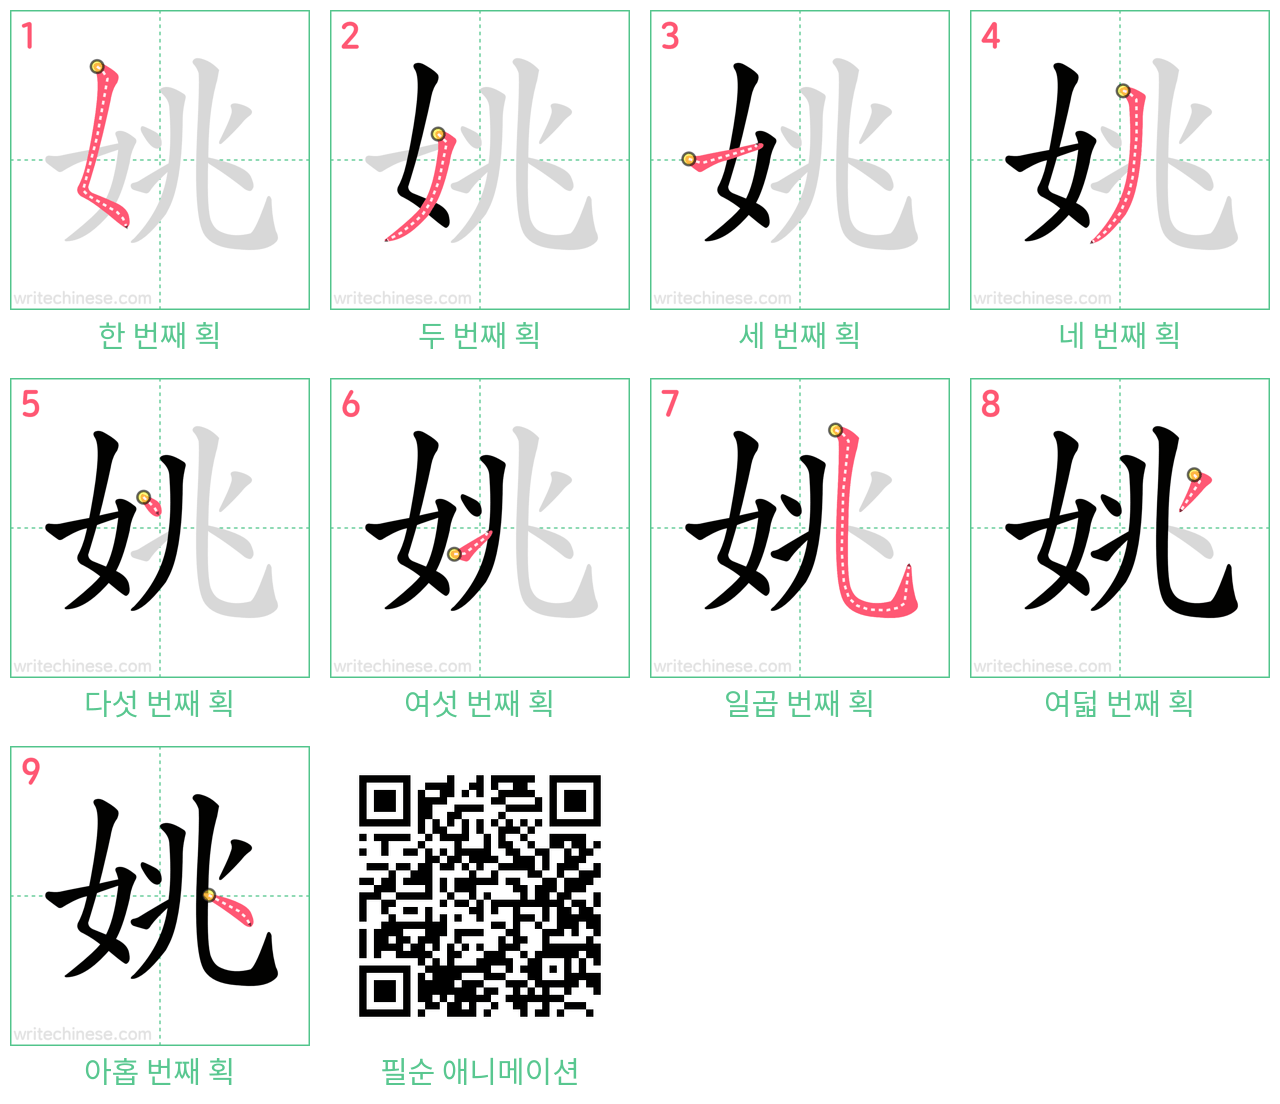 姚 step-by-step stroke order diagrams